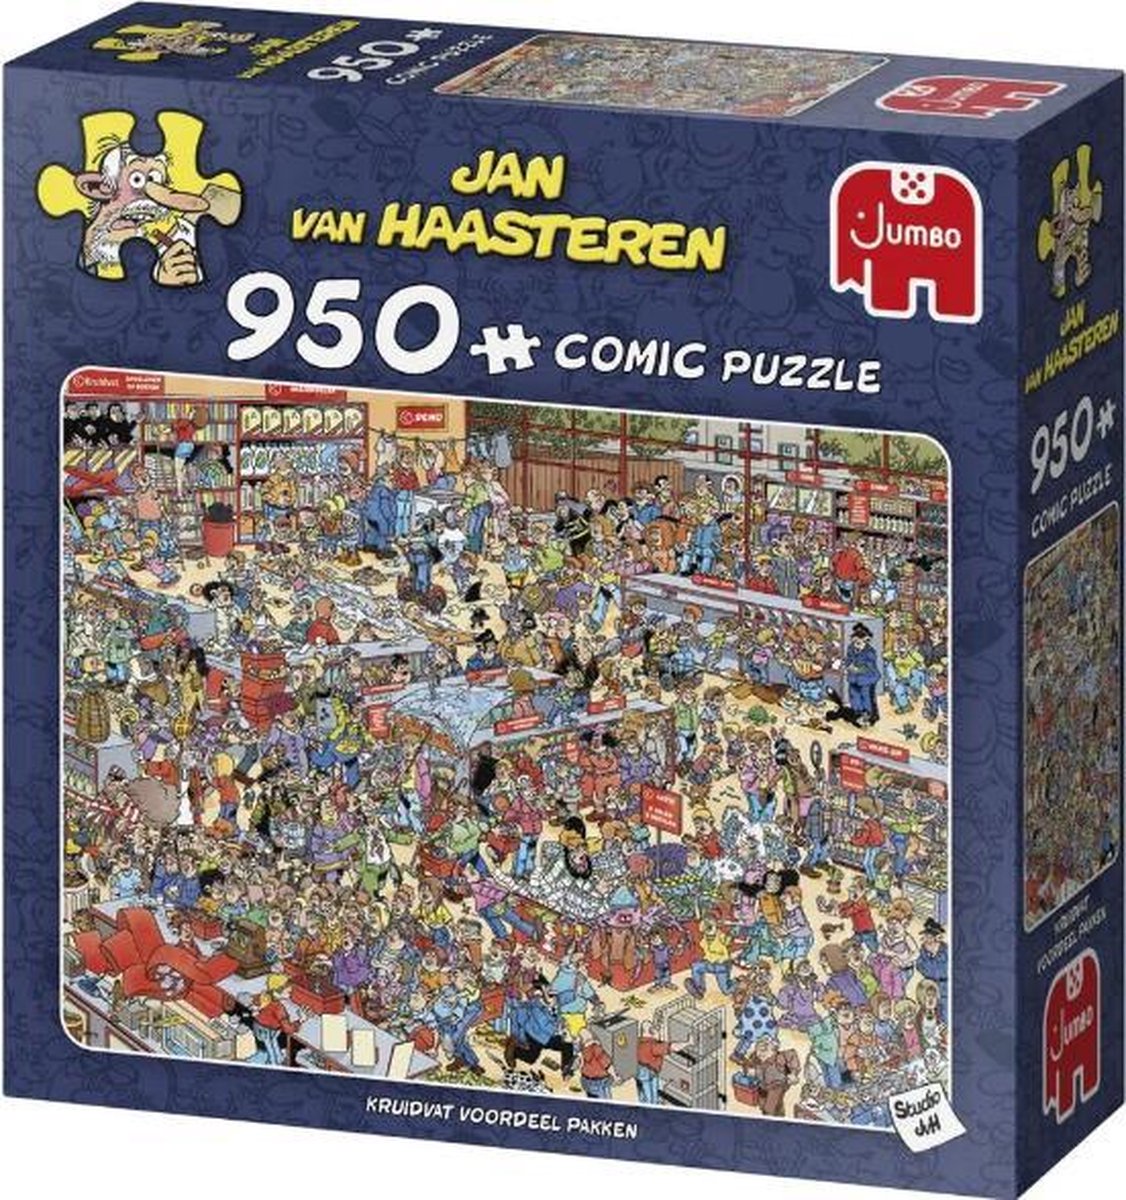 Jan van Haasteren Kruidvat Voordeel Pakken puzzel - 950 stukjes | bol.com